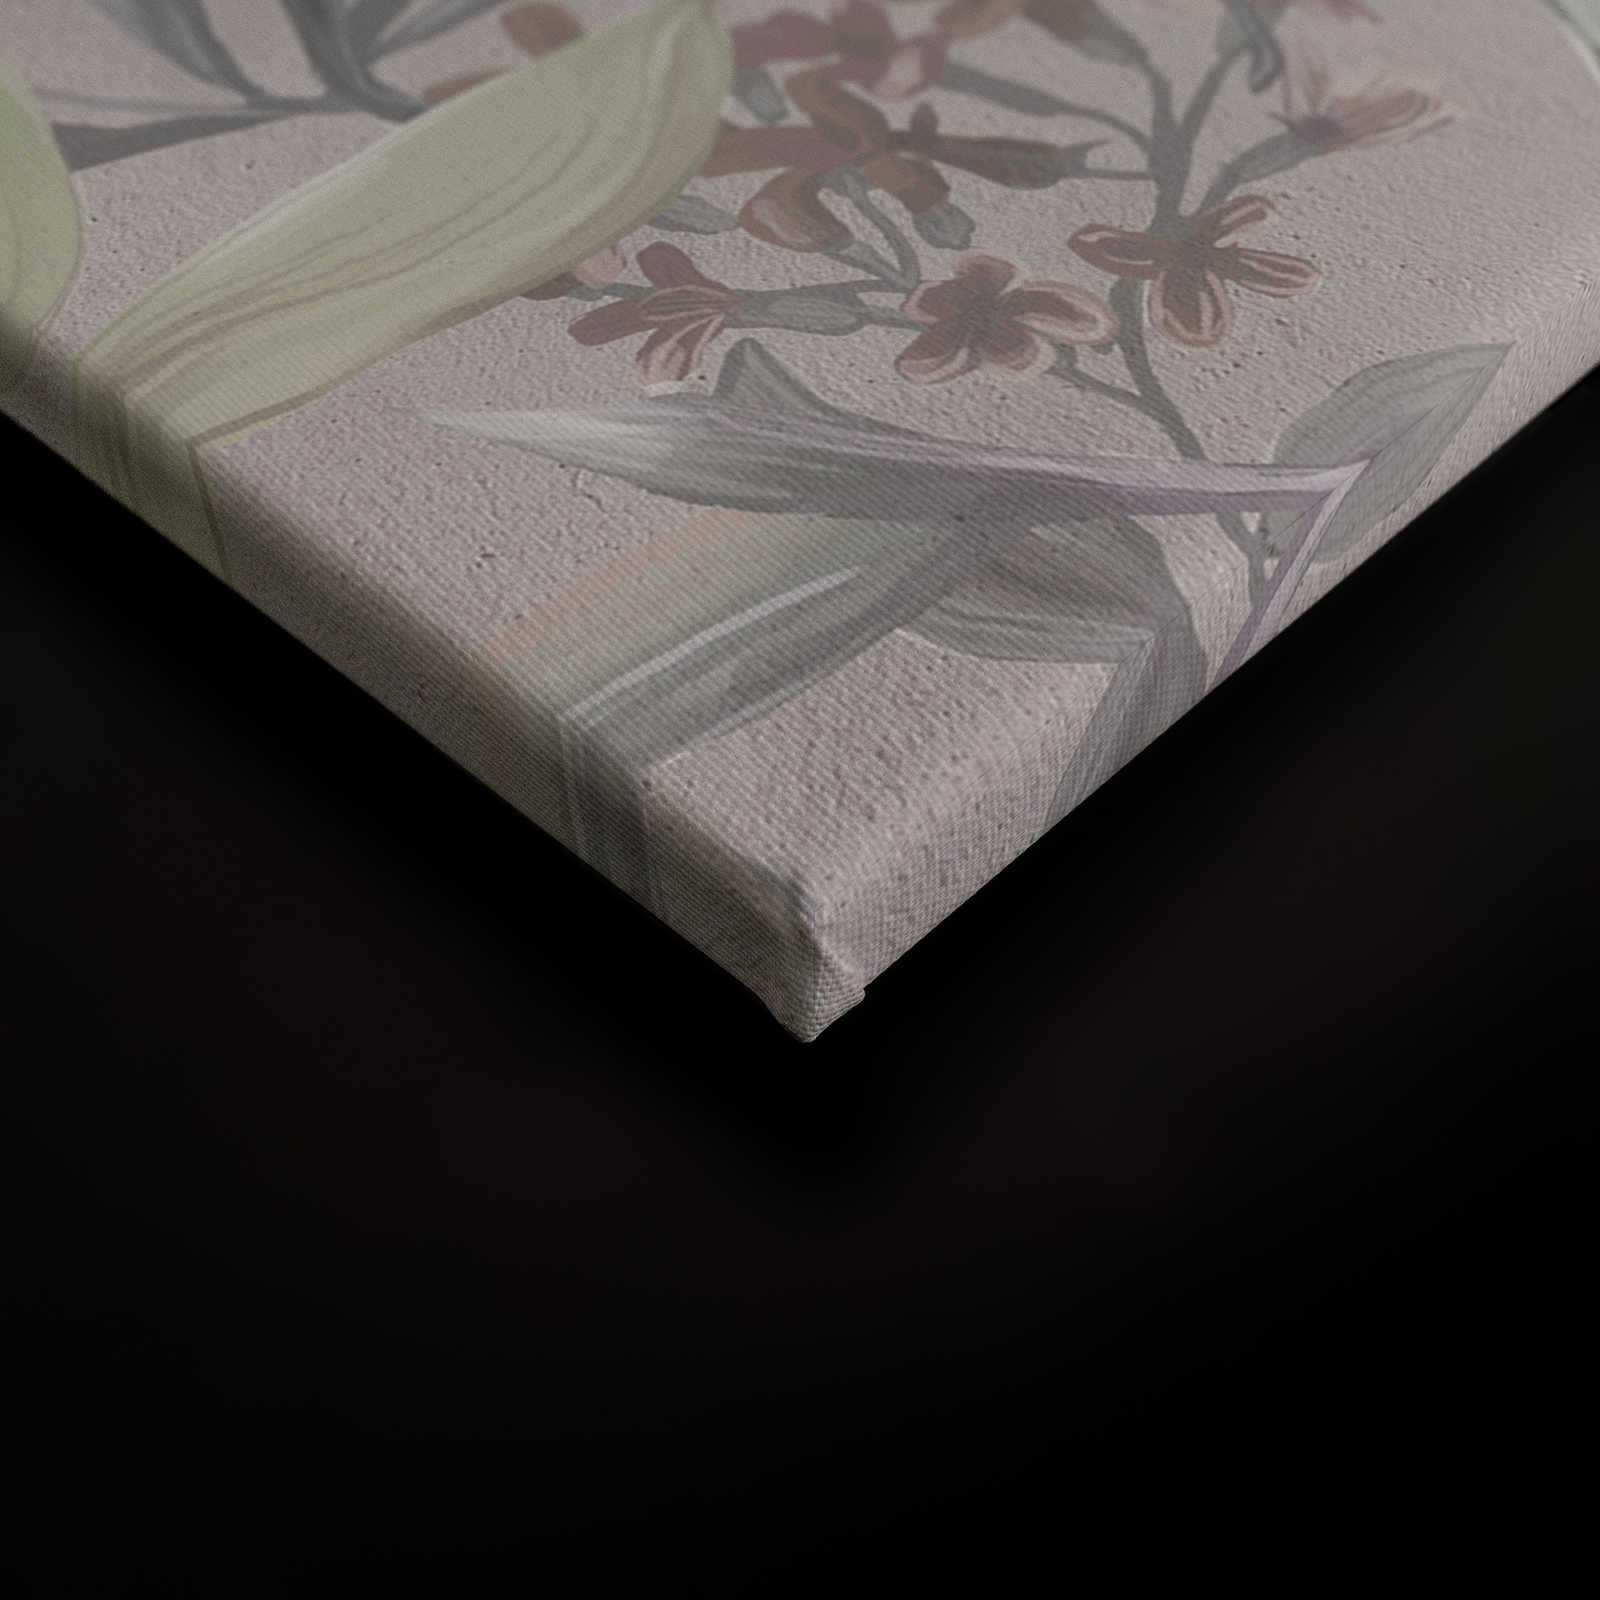             Jungle florale toile dessinée | gris, blanc - 0,90 m x 0,60 m
        